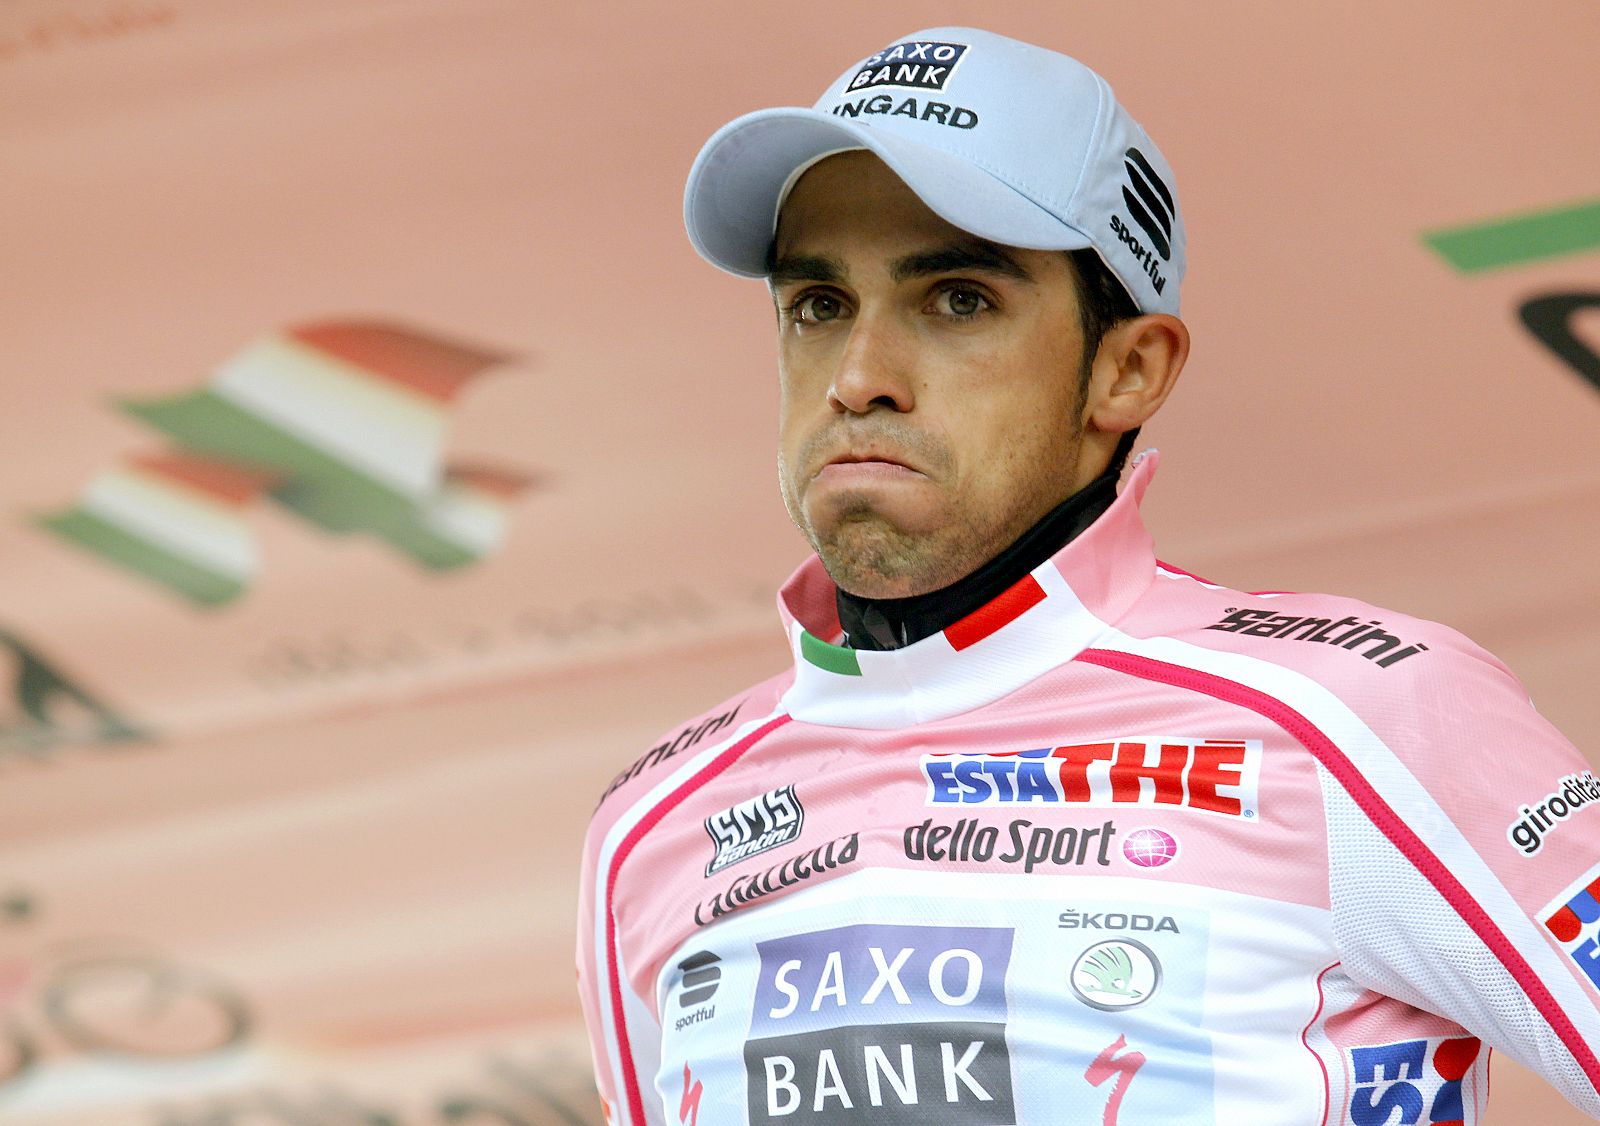 El español Alberto Contador en el podio del Giro de Italia.